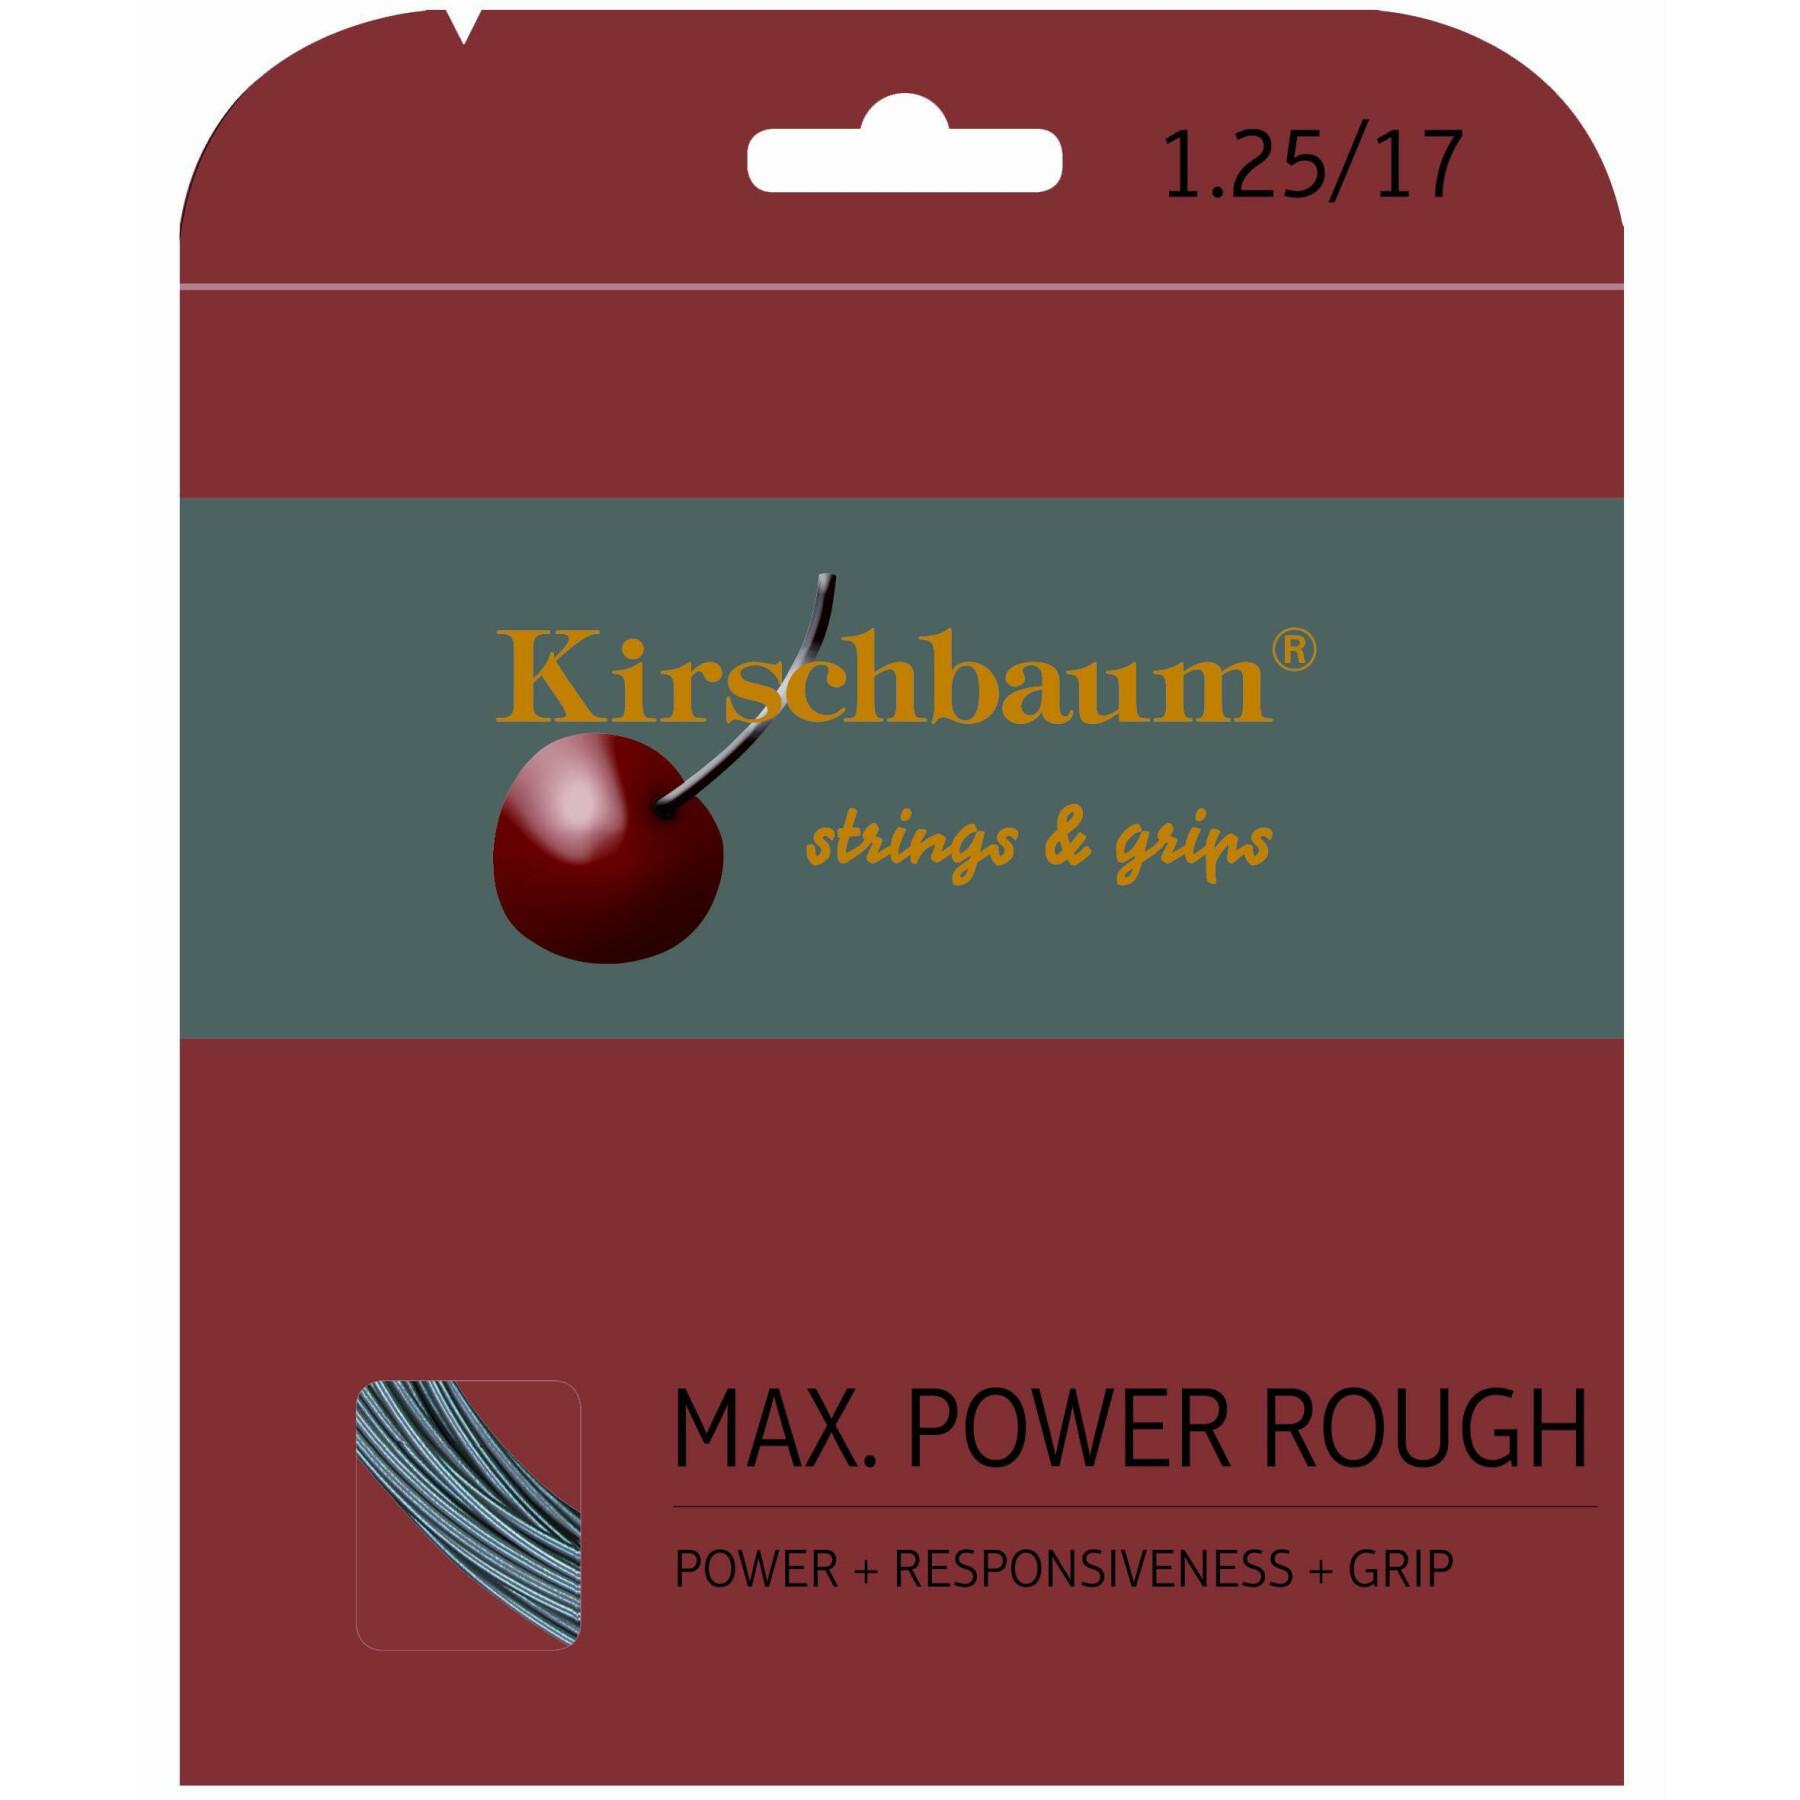 Cuerdas de tenis Kirschbaum Mmax Power Rough 12 m